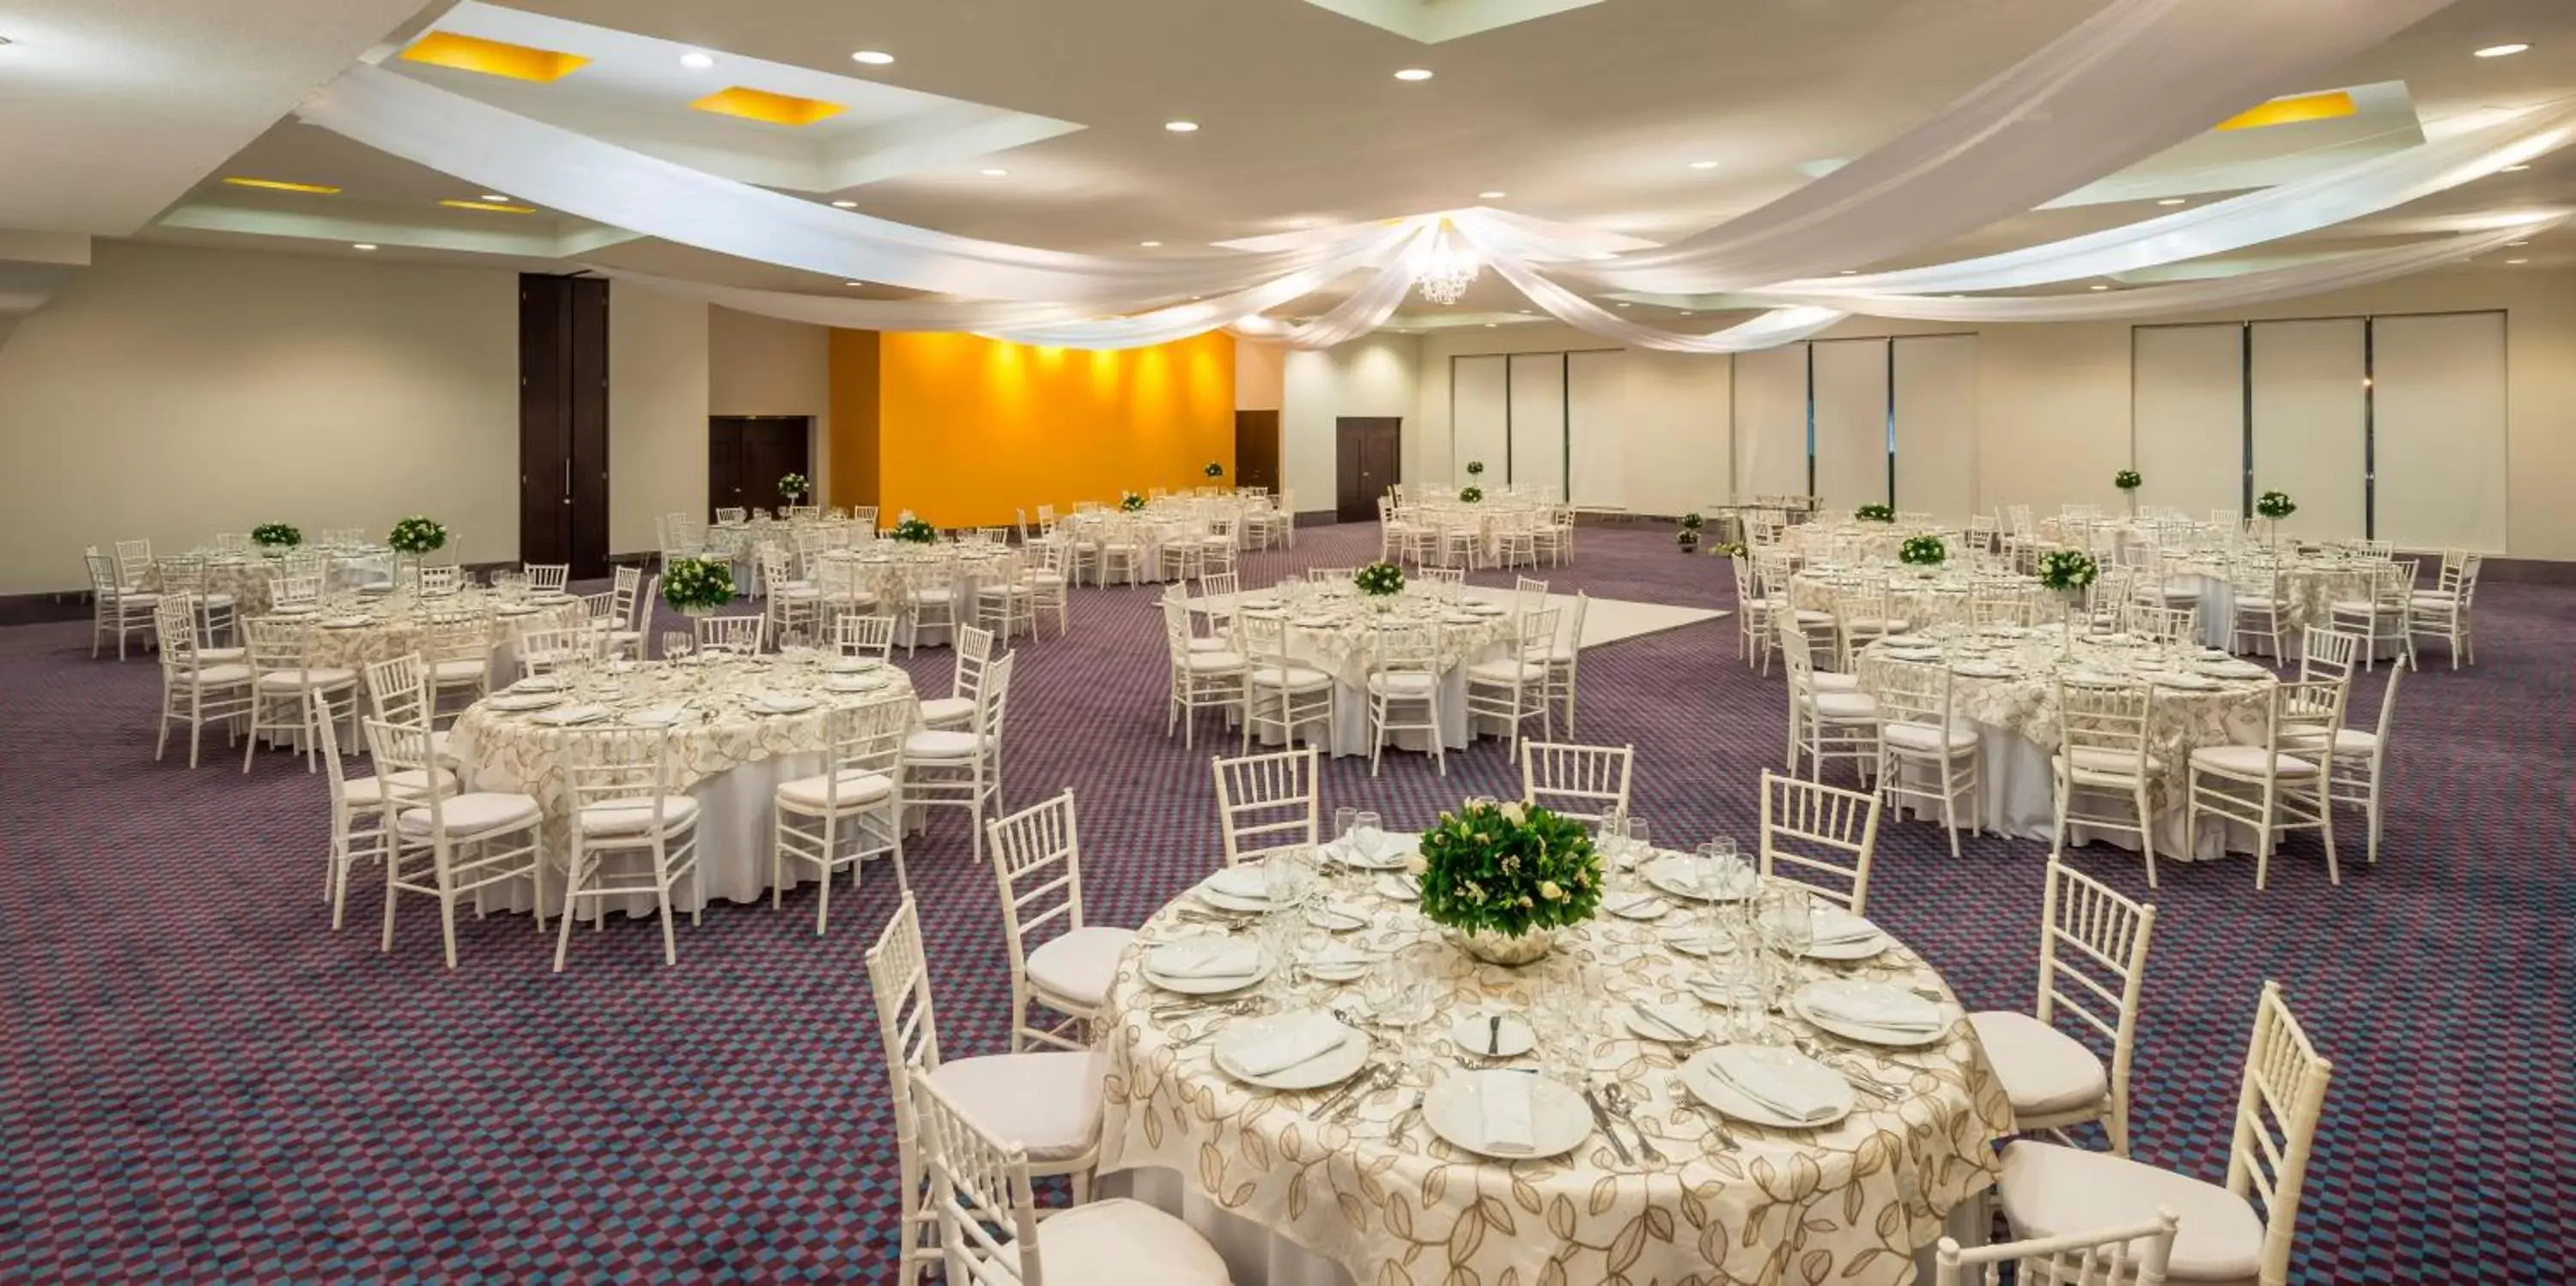 Banquet/Function facilities, Banquet Facilities in Camino Real Veracruz